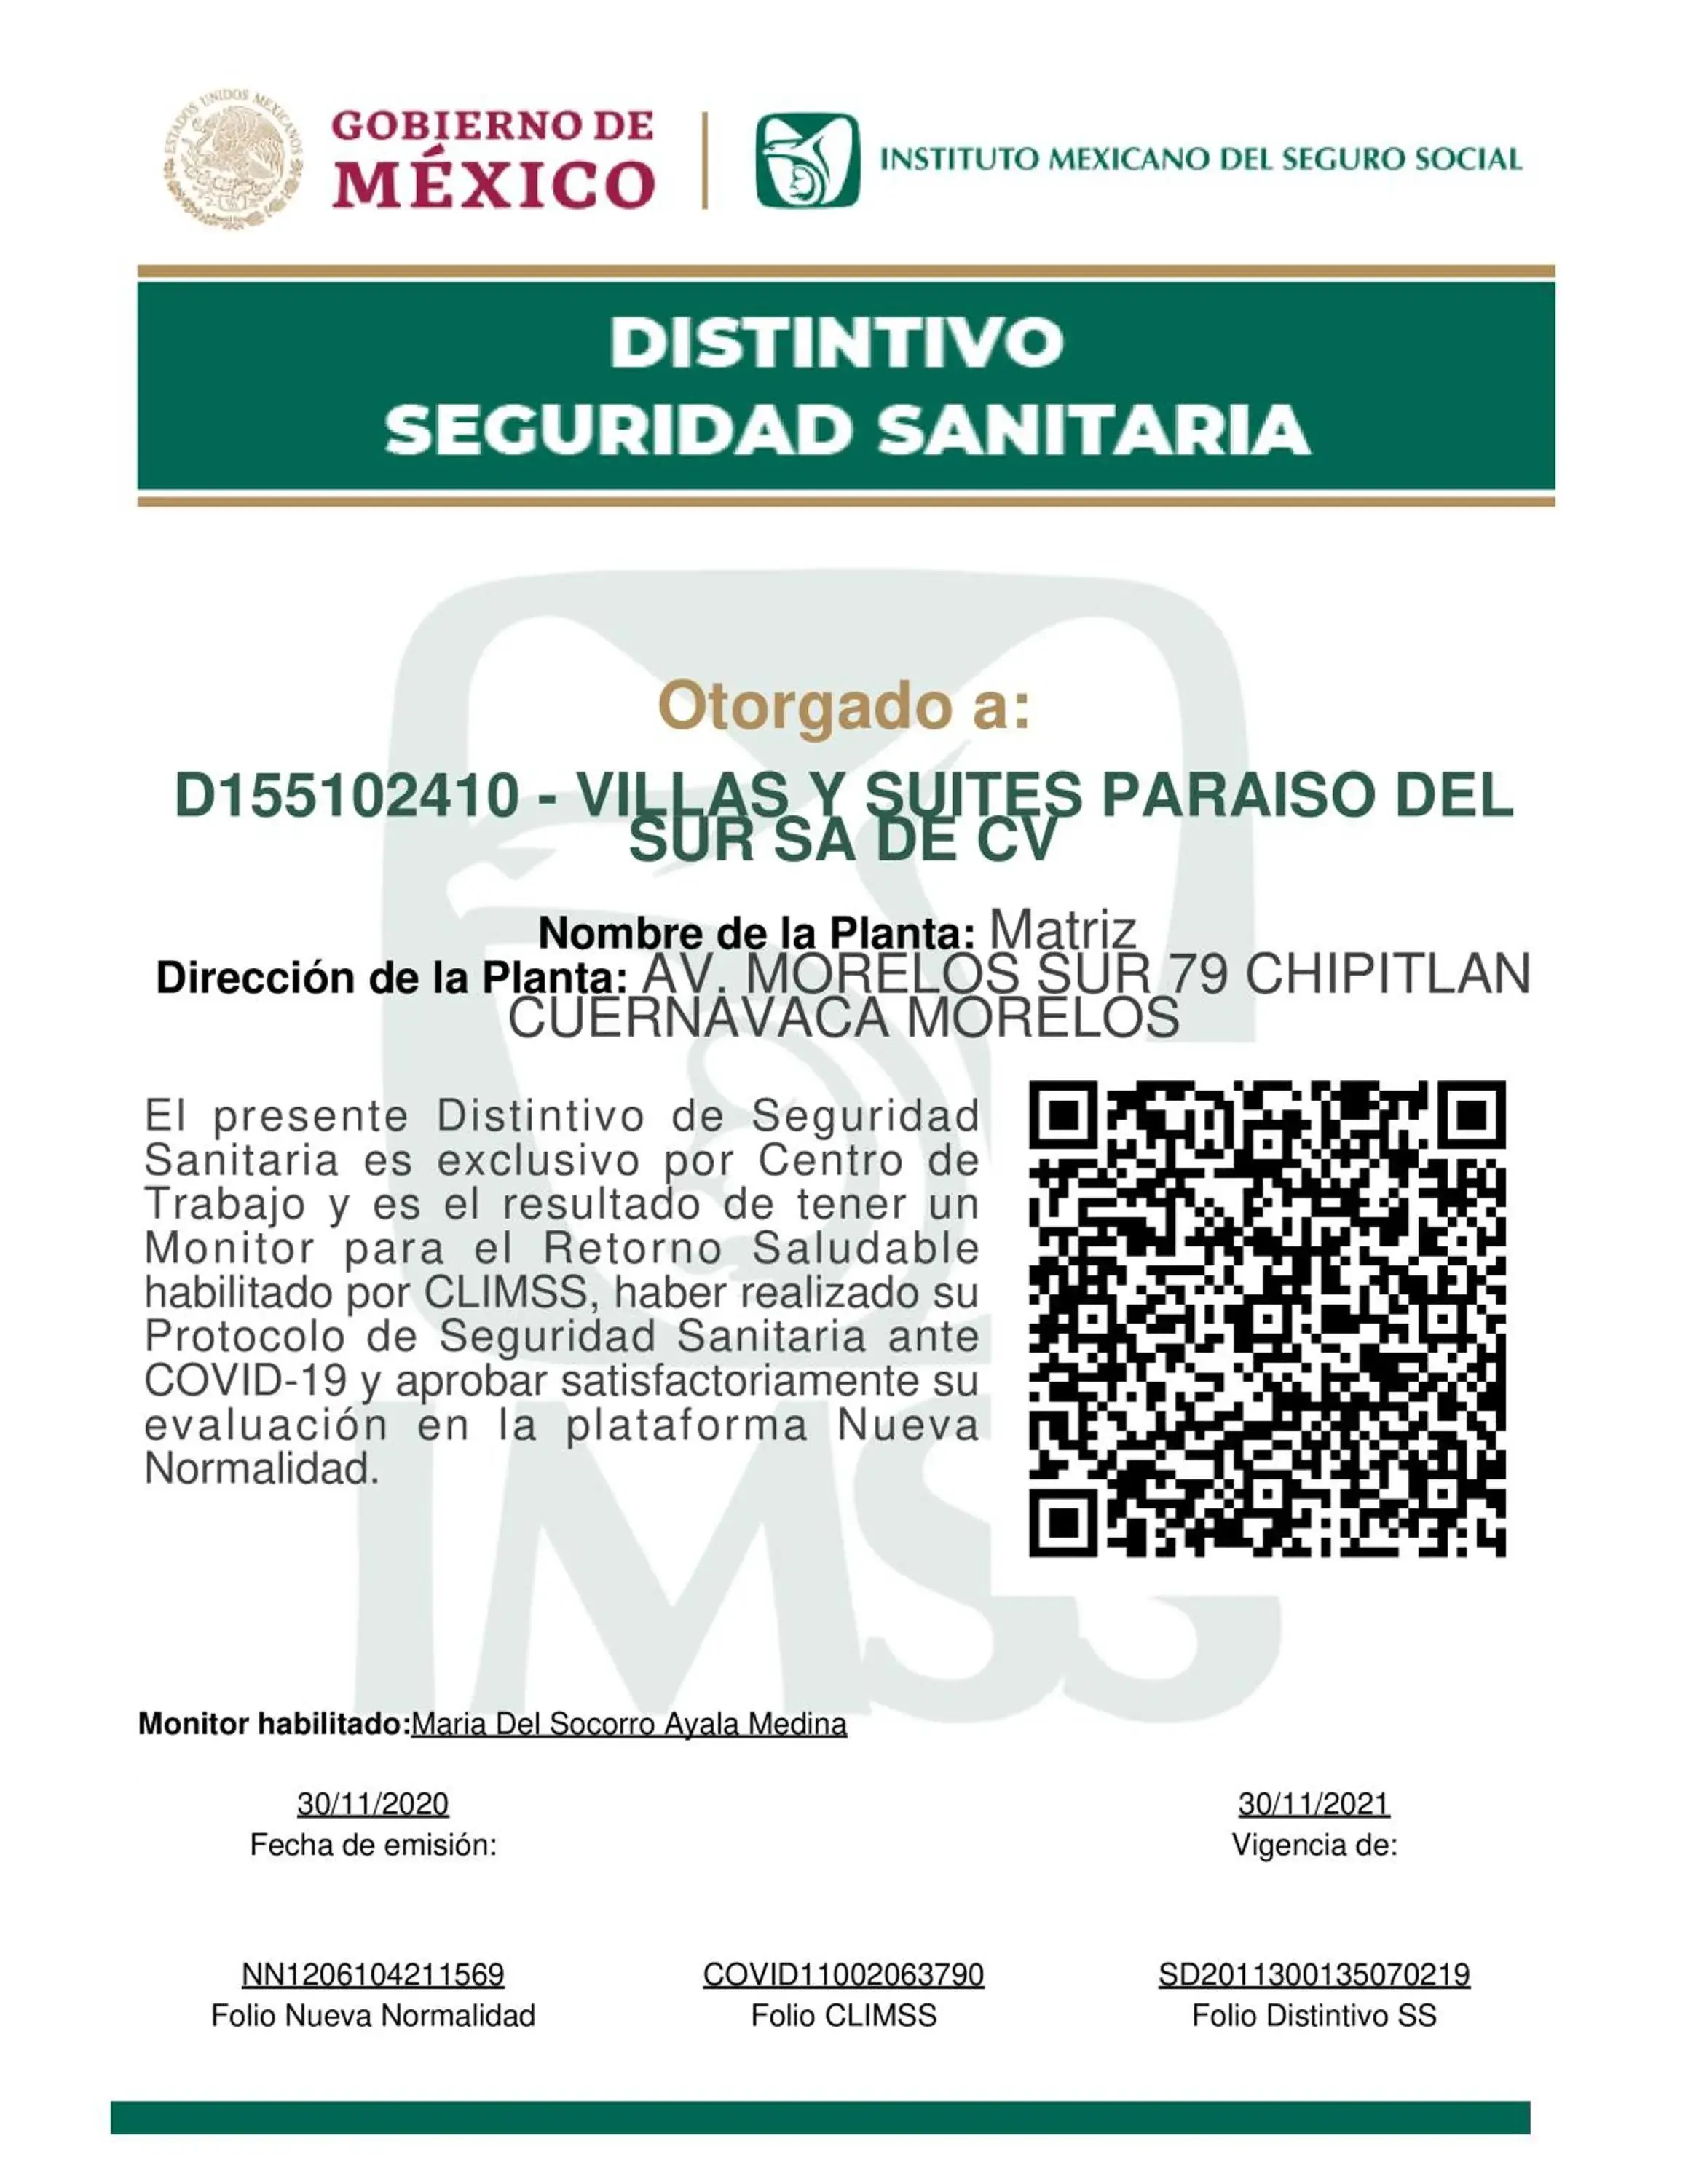 Certificate/Award in Villas y Suites Paraiso del Sur